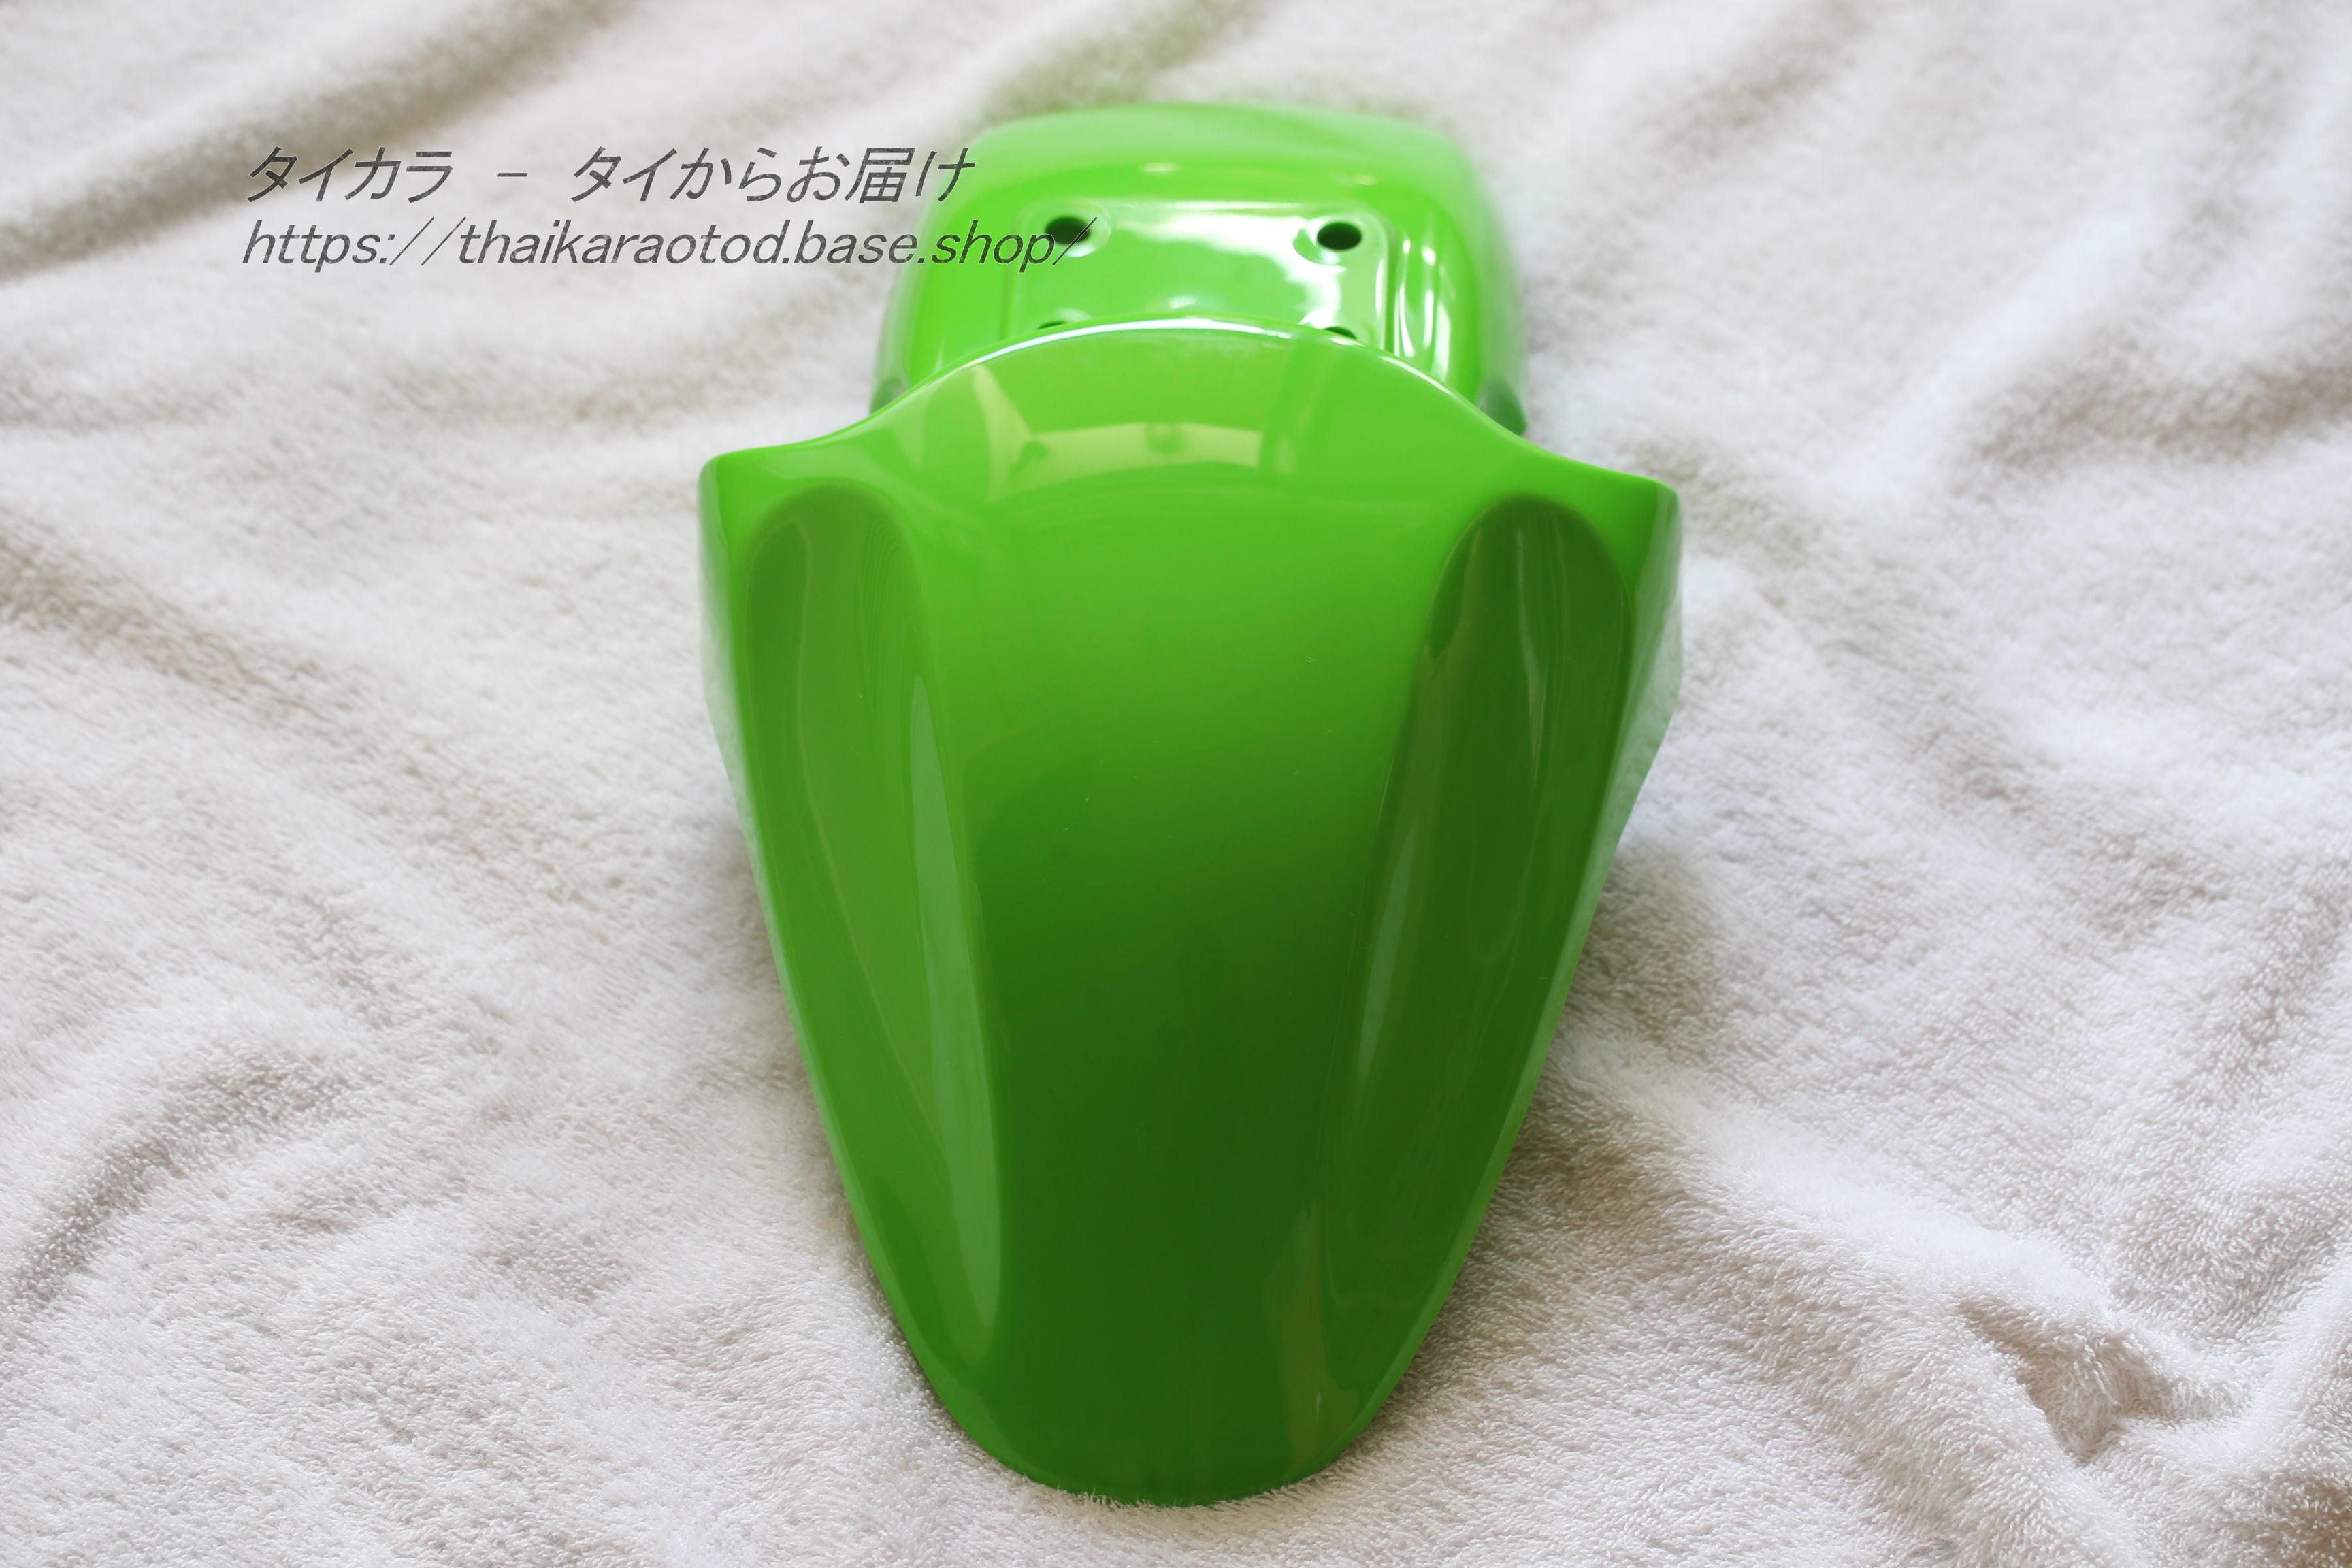 NINJA1000 フロントフェンダー 緑M 35004-0118 カワサキ 純正 :32103969